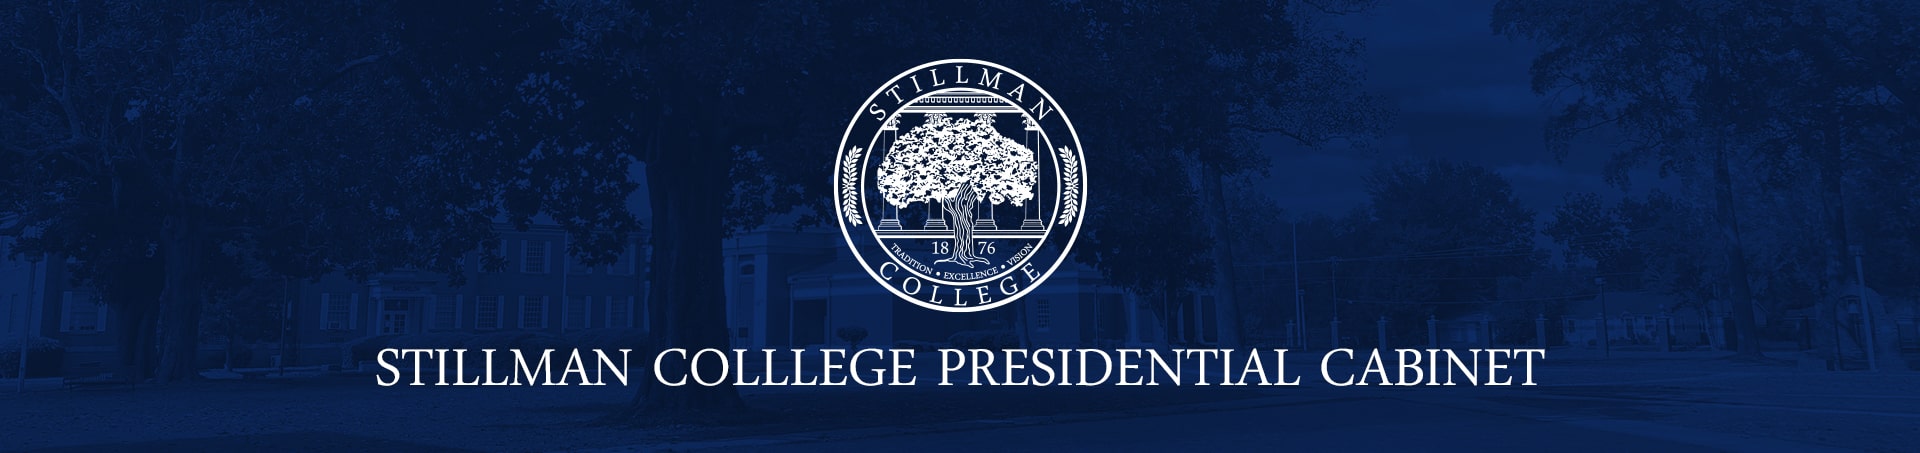 stillman presidential cabinet logo